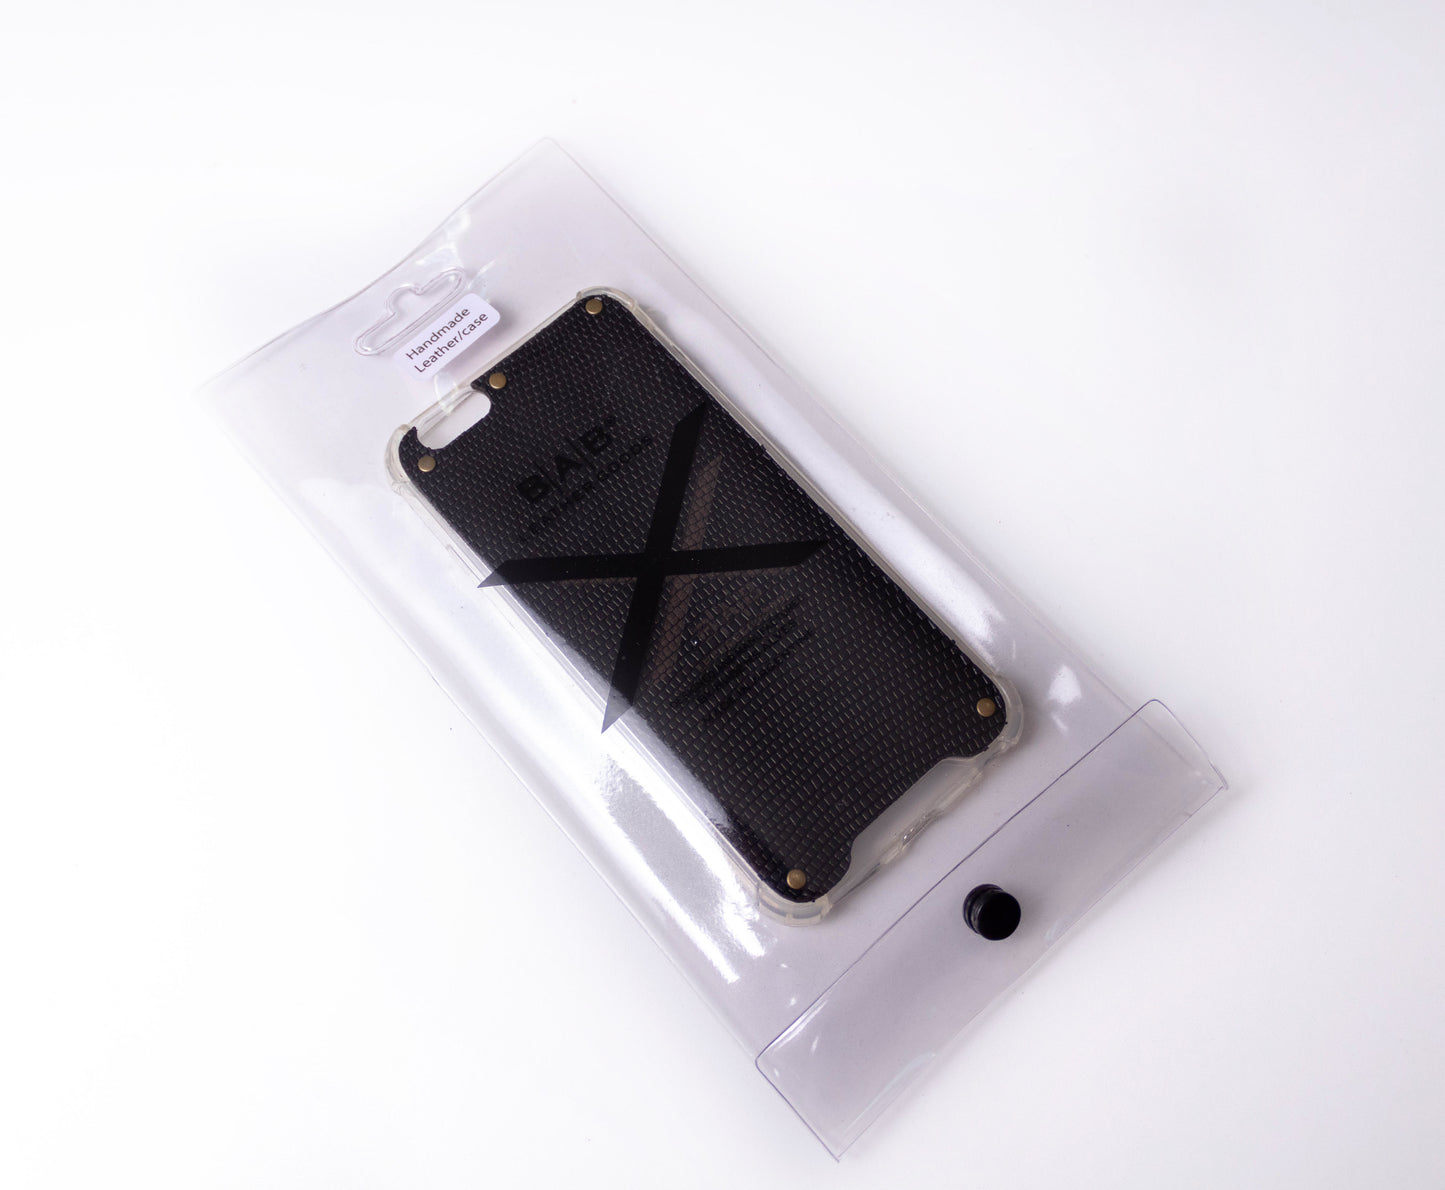 Coque pour iPhone en Cuir Véritable Serpent Noir Texturé, découpée et gravée au laser, 5 Rivets en Bronze.- F36